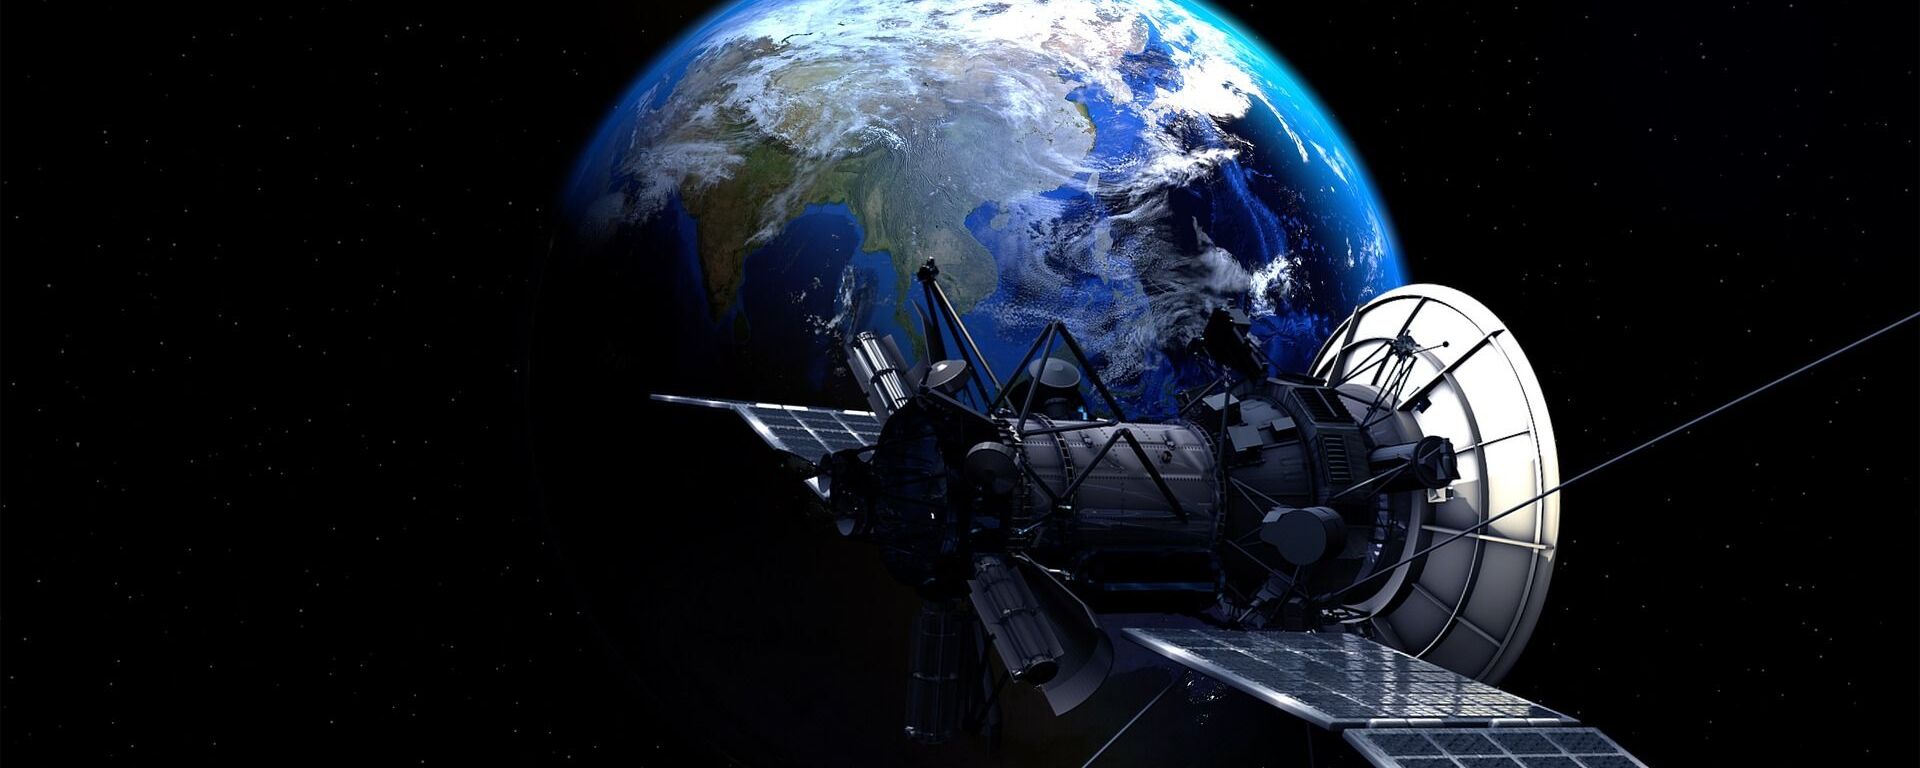 Un satélite en el espacio (imagen referencial) - Sputnik Mundo, 1920, 27.12.2019